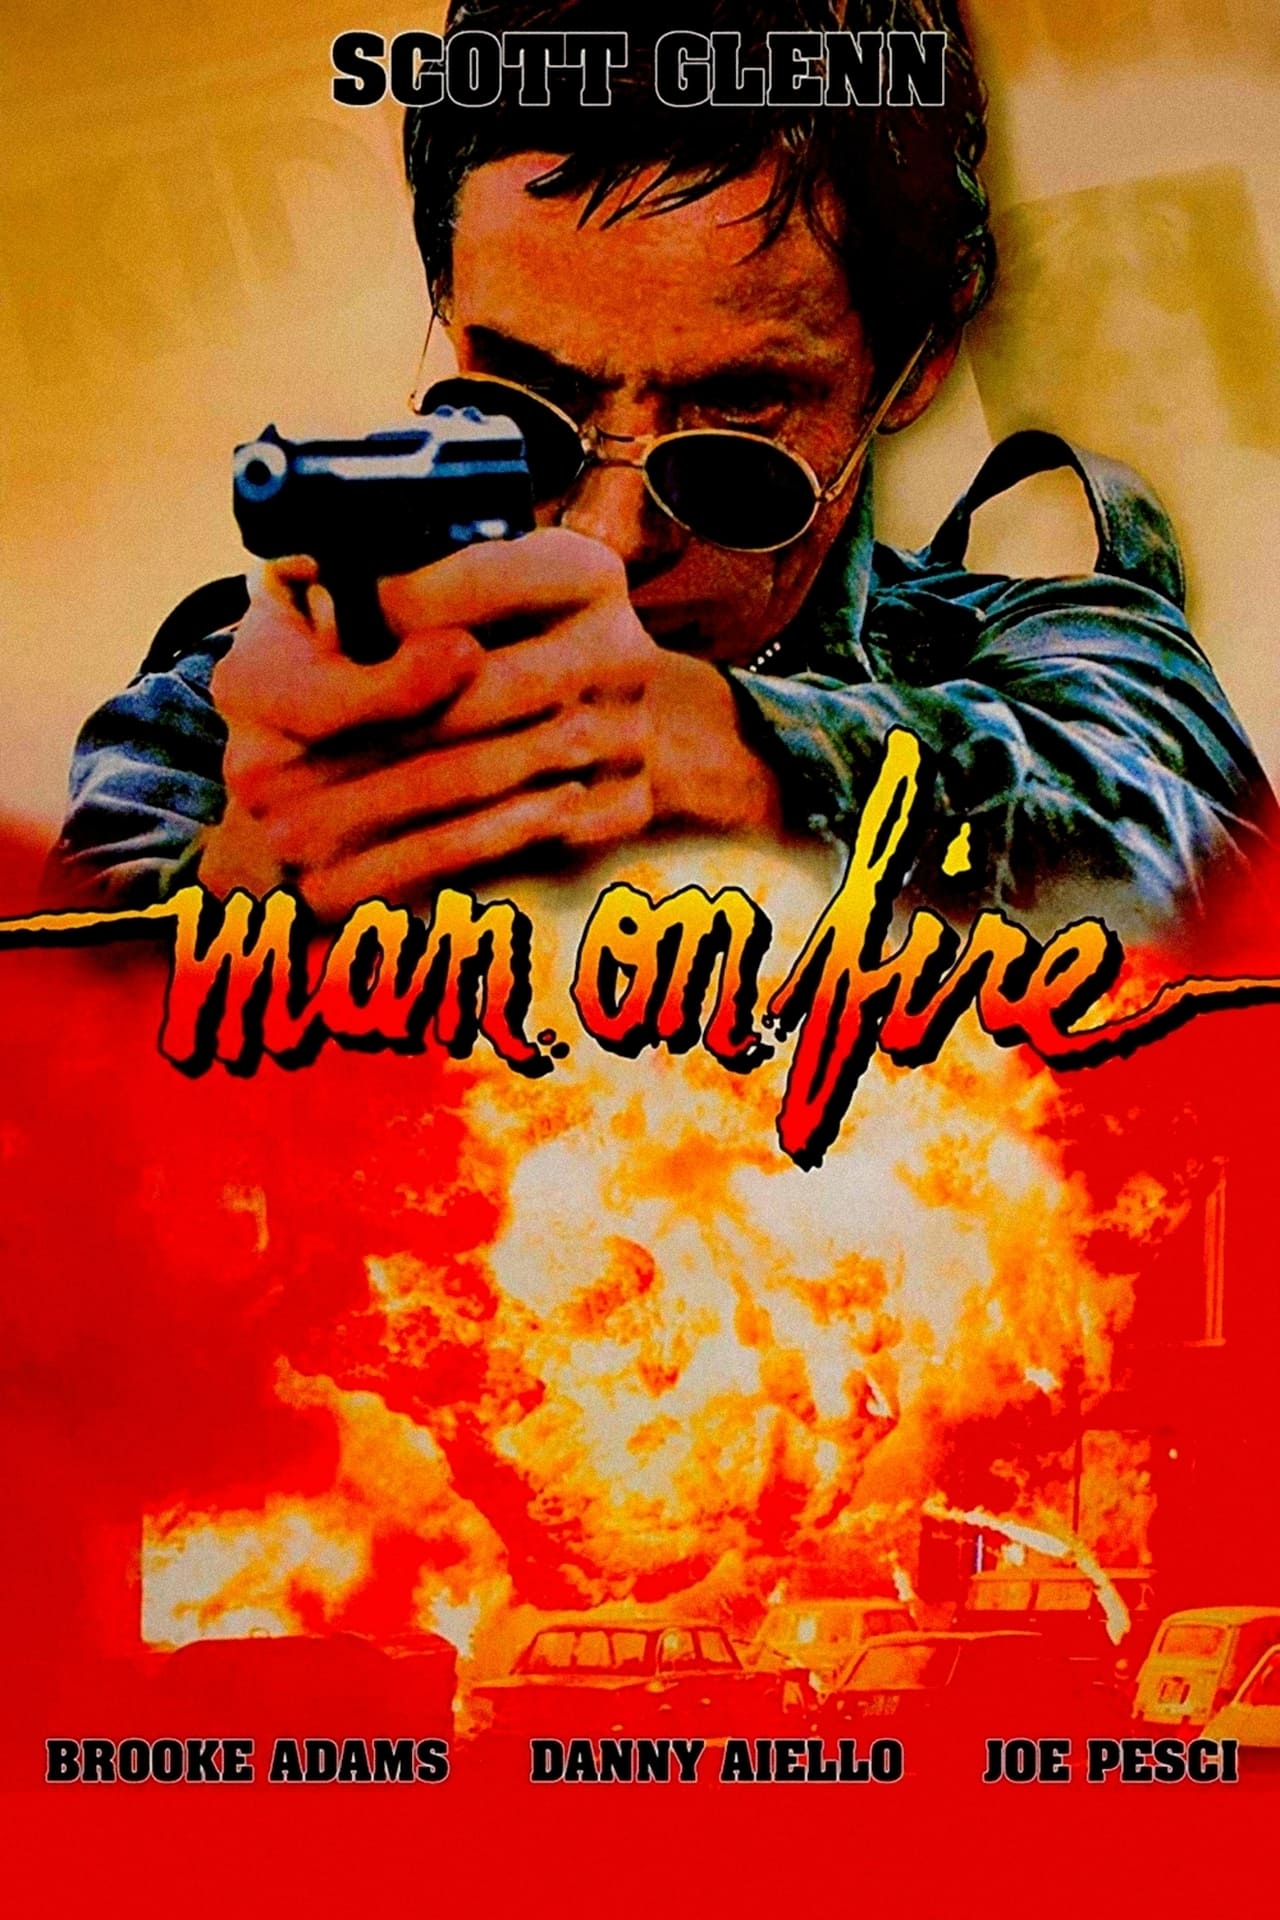 EN - Man On Fire (1987) JOE PESCI